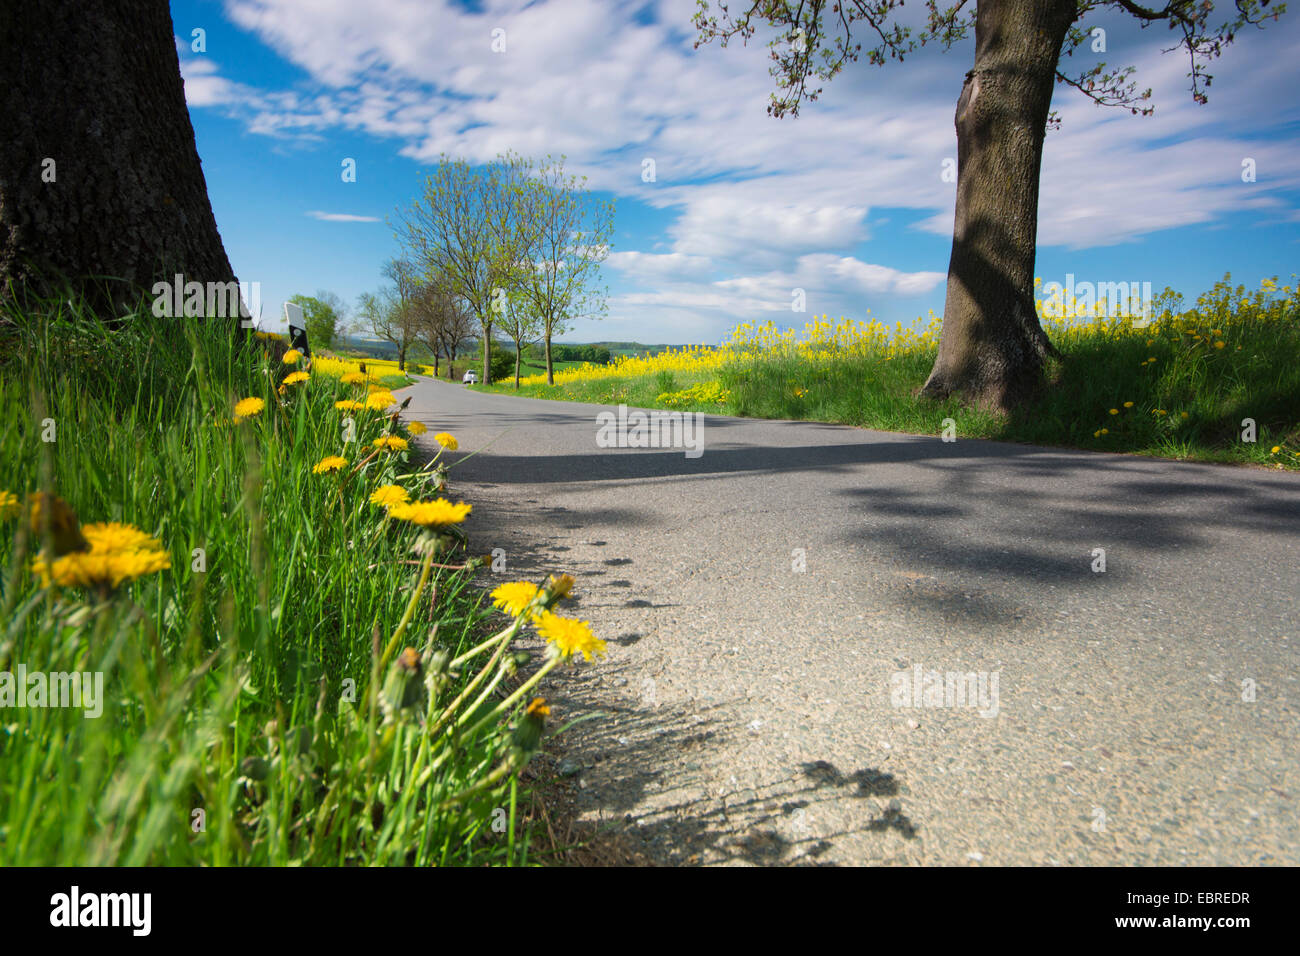 blooming dandelions roadsides in field landscape, Germany Stock Photo